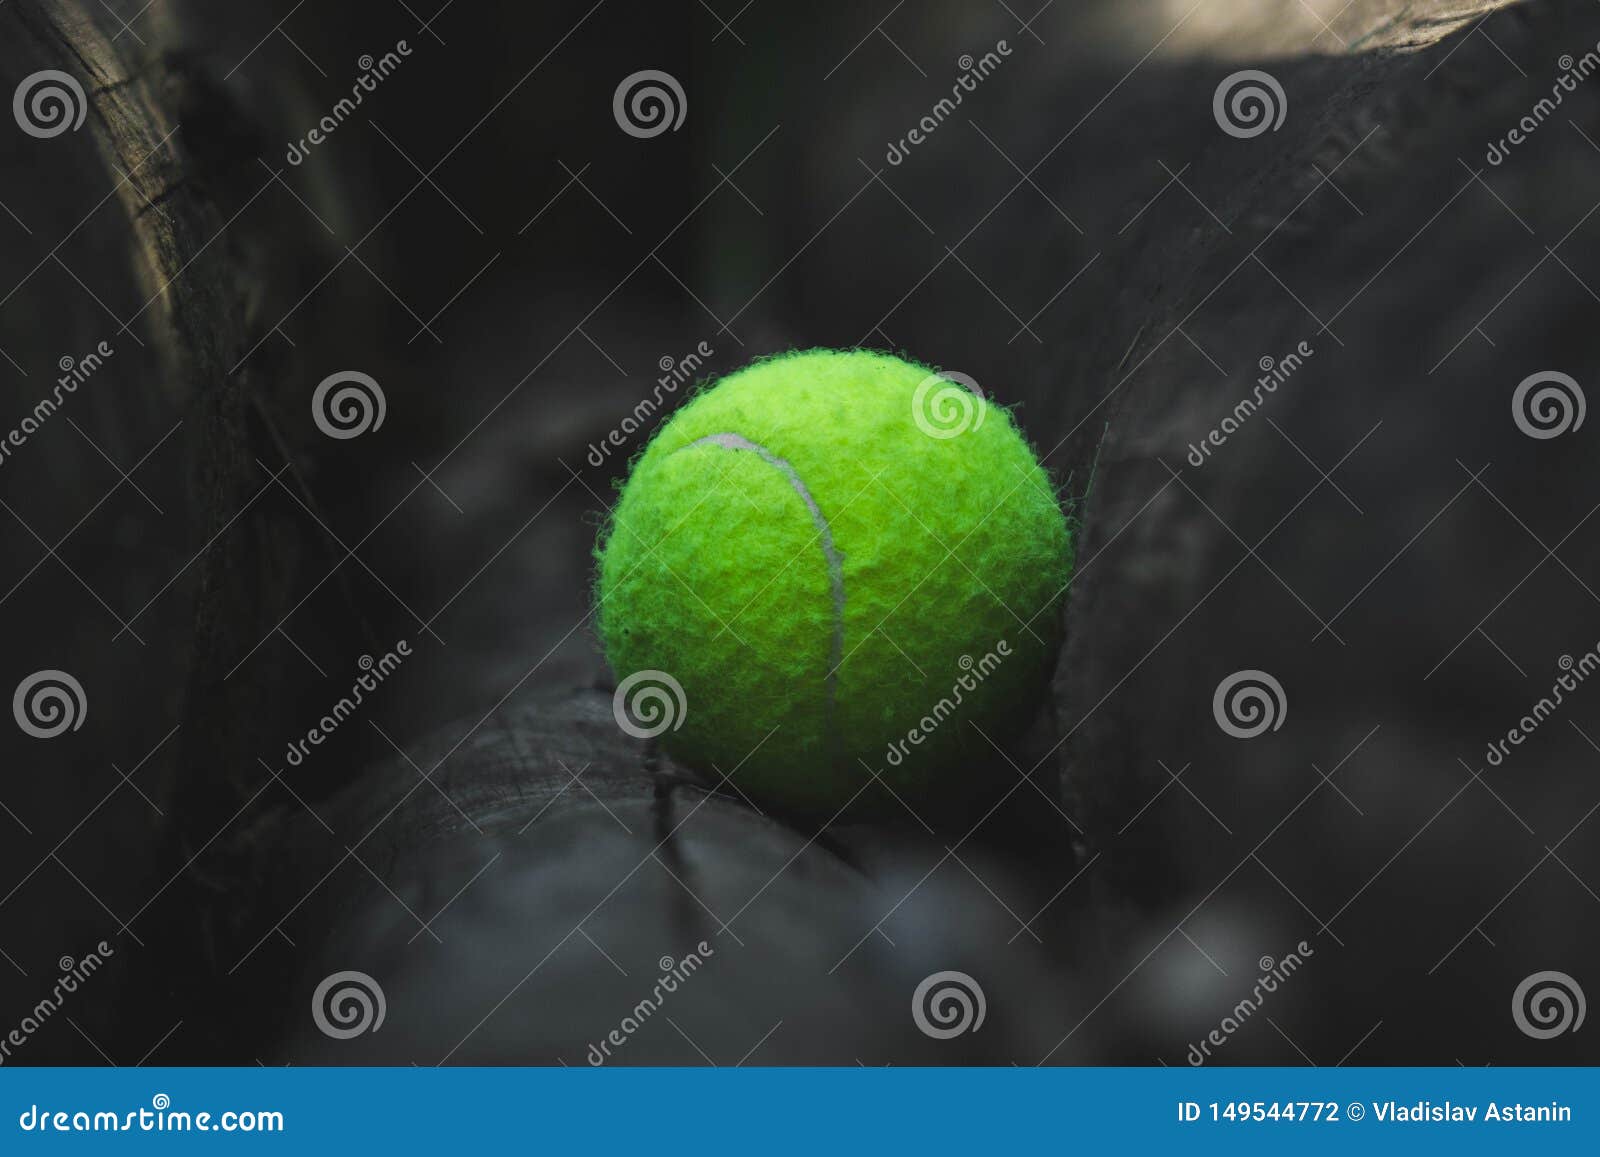 https://thumbs.dreamstime.com/z/une-balle-de-tennis-verte-est-couch%C3%A9e-sur-un-arbre-pos%C3%A9e-fond-motif-sport-forme-physique-%C3%A9t%C3%A9-texture-printemps-jeu-activit%C3%A9-149544772.jpg